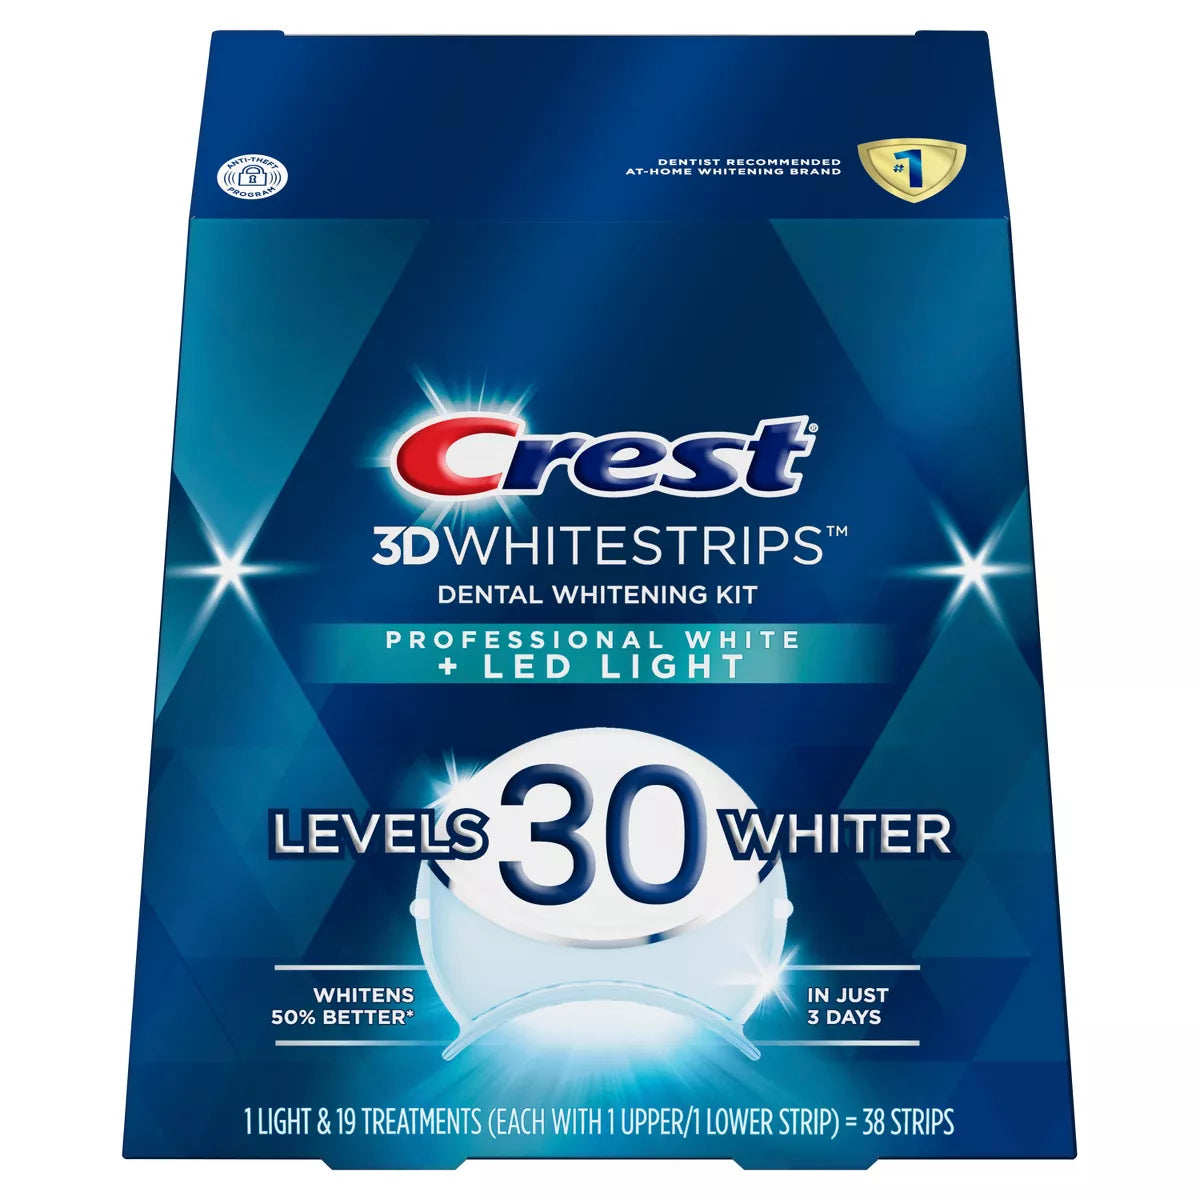 Crest - 3D Whitestrips Professional White + LED Light (Level 30) 38 strip